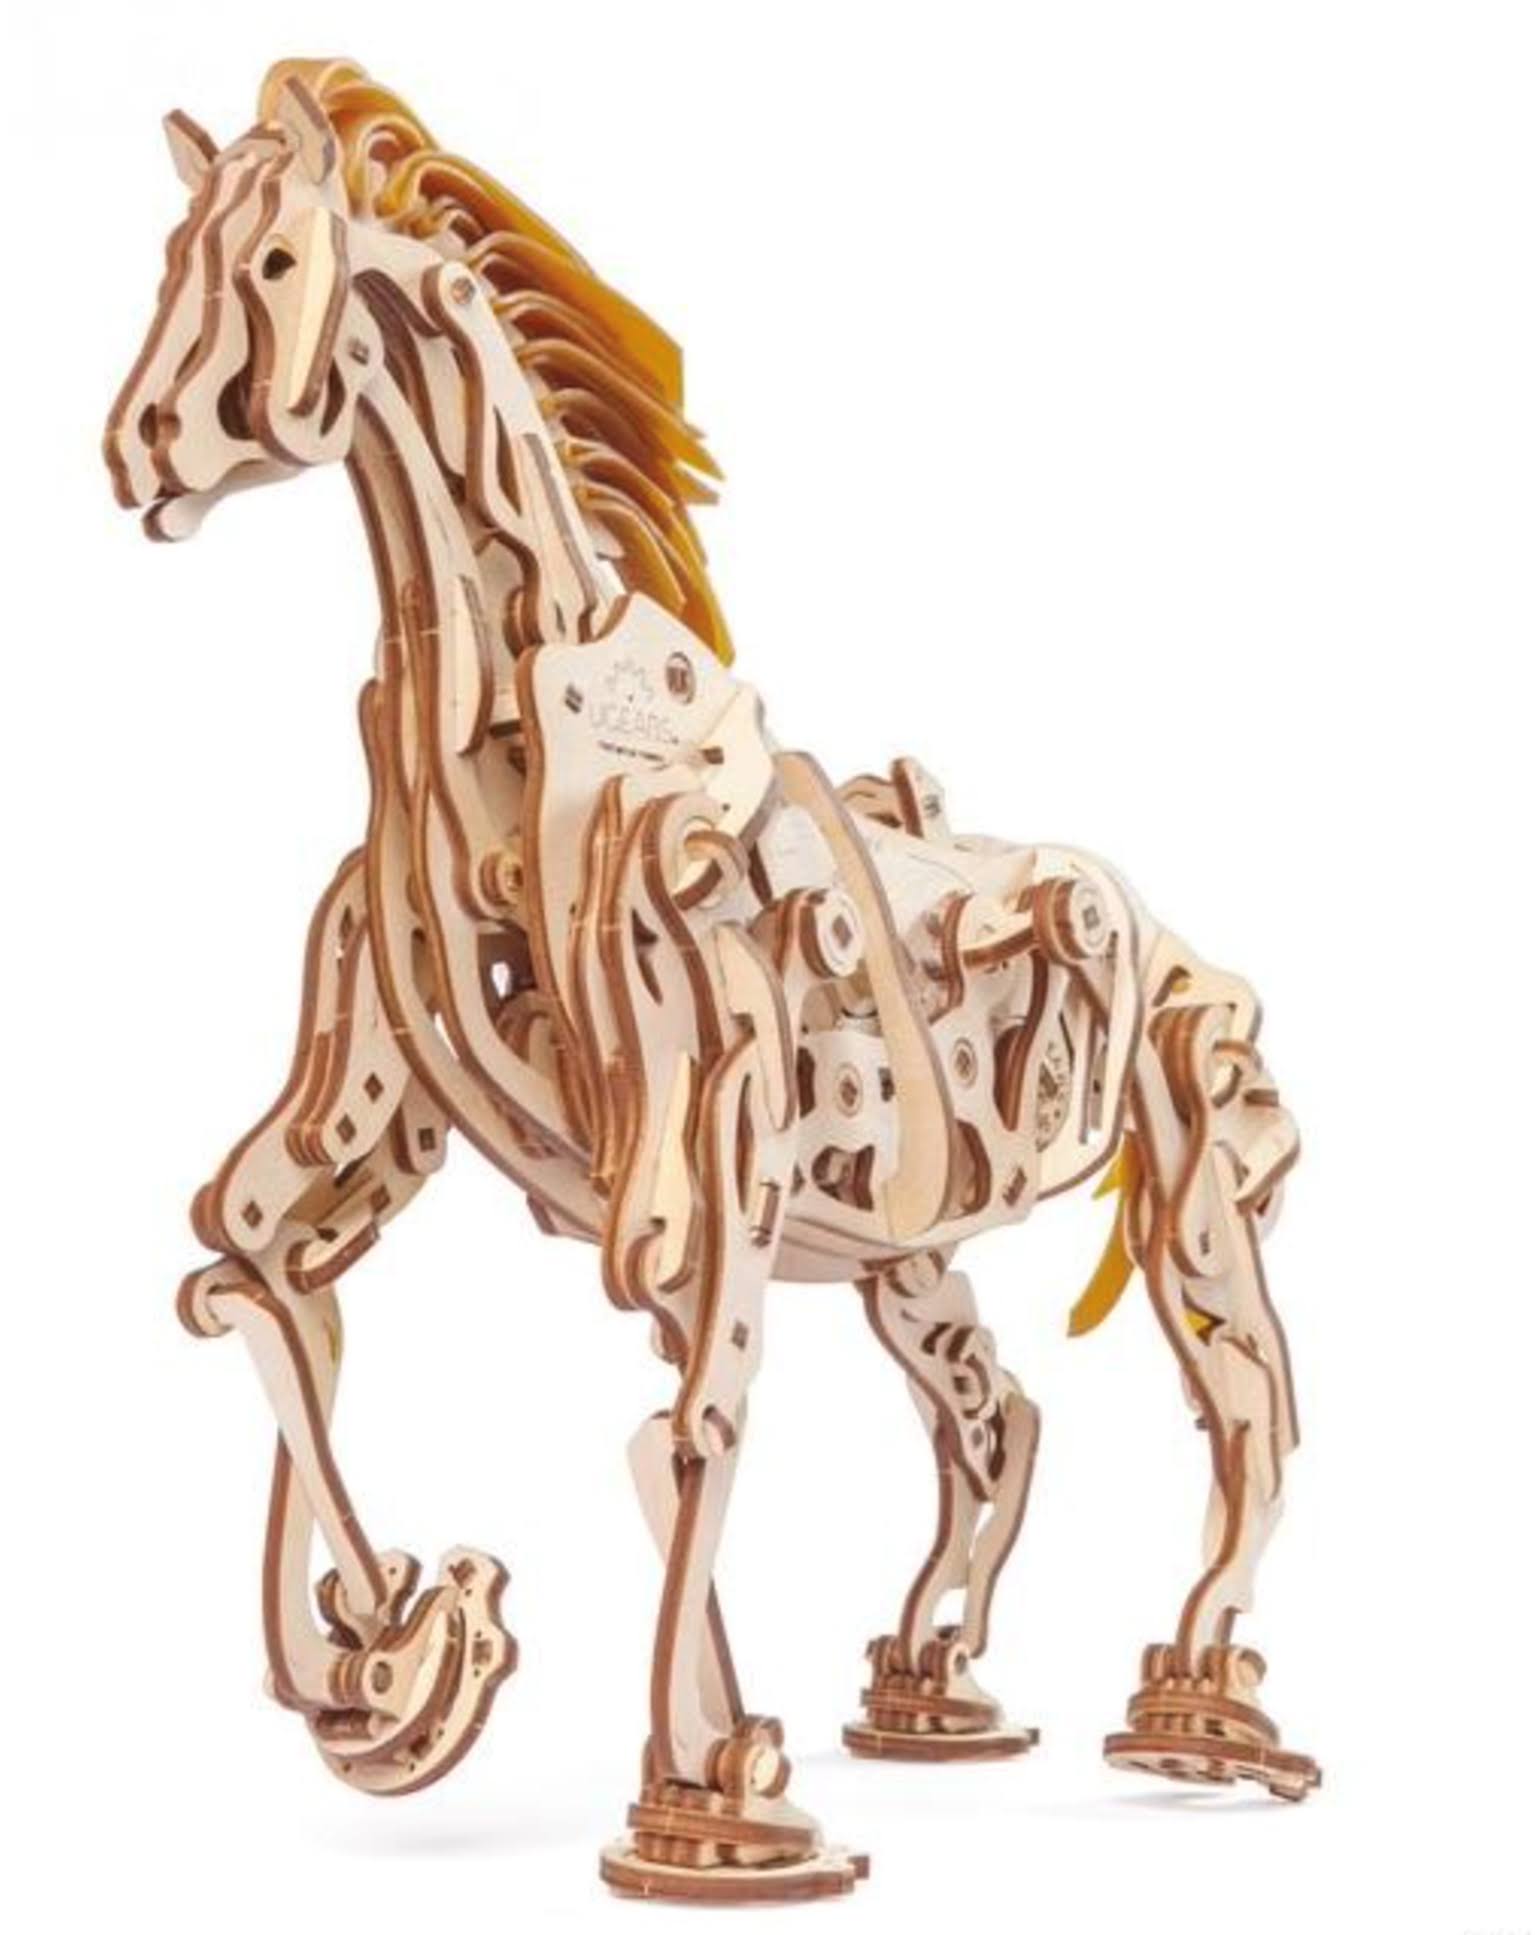 UGears Horse-Mechanoid Wooden 3D Model Kit